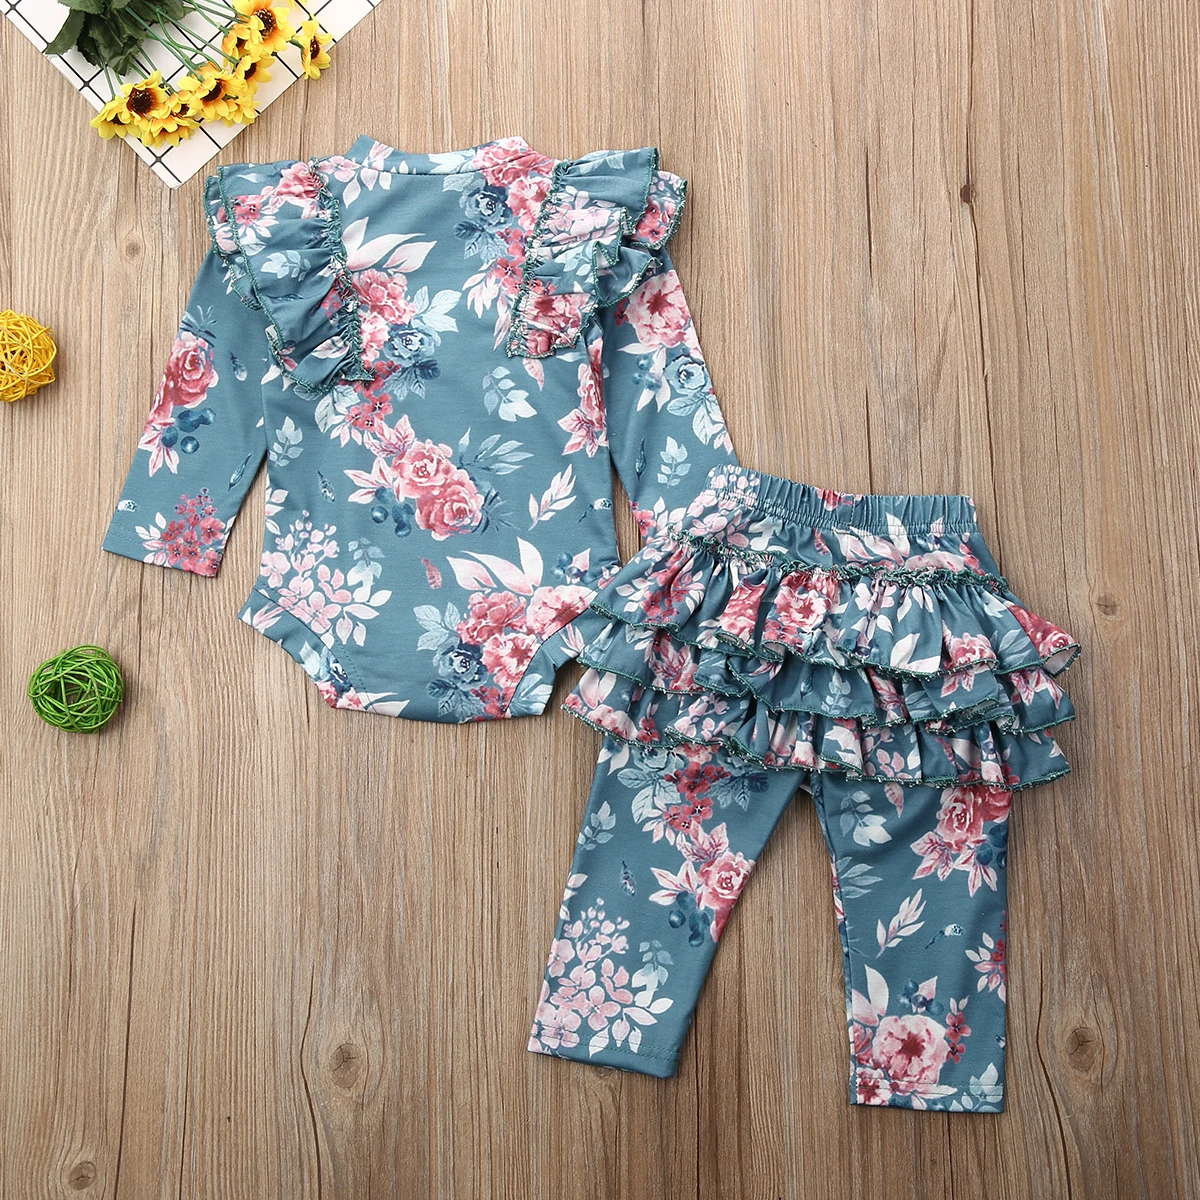 Хлопковая одежда с цветочным рисунком для новорожденных девочек Комбинезон, топ, леггинсы с оборками, штаны осенне-зимняя теплая одежда повседневная одежда для детей от 0 до 18 месяцев